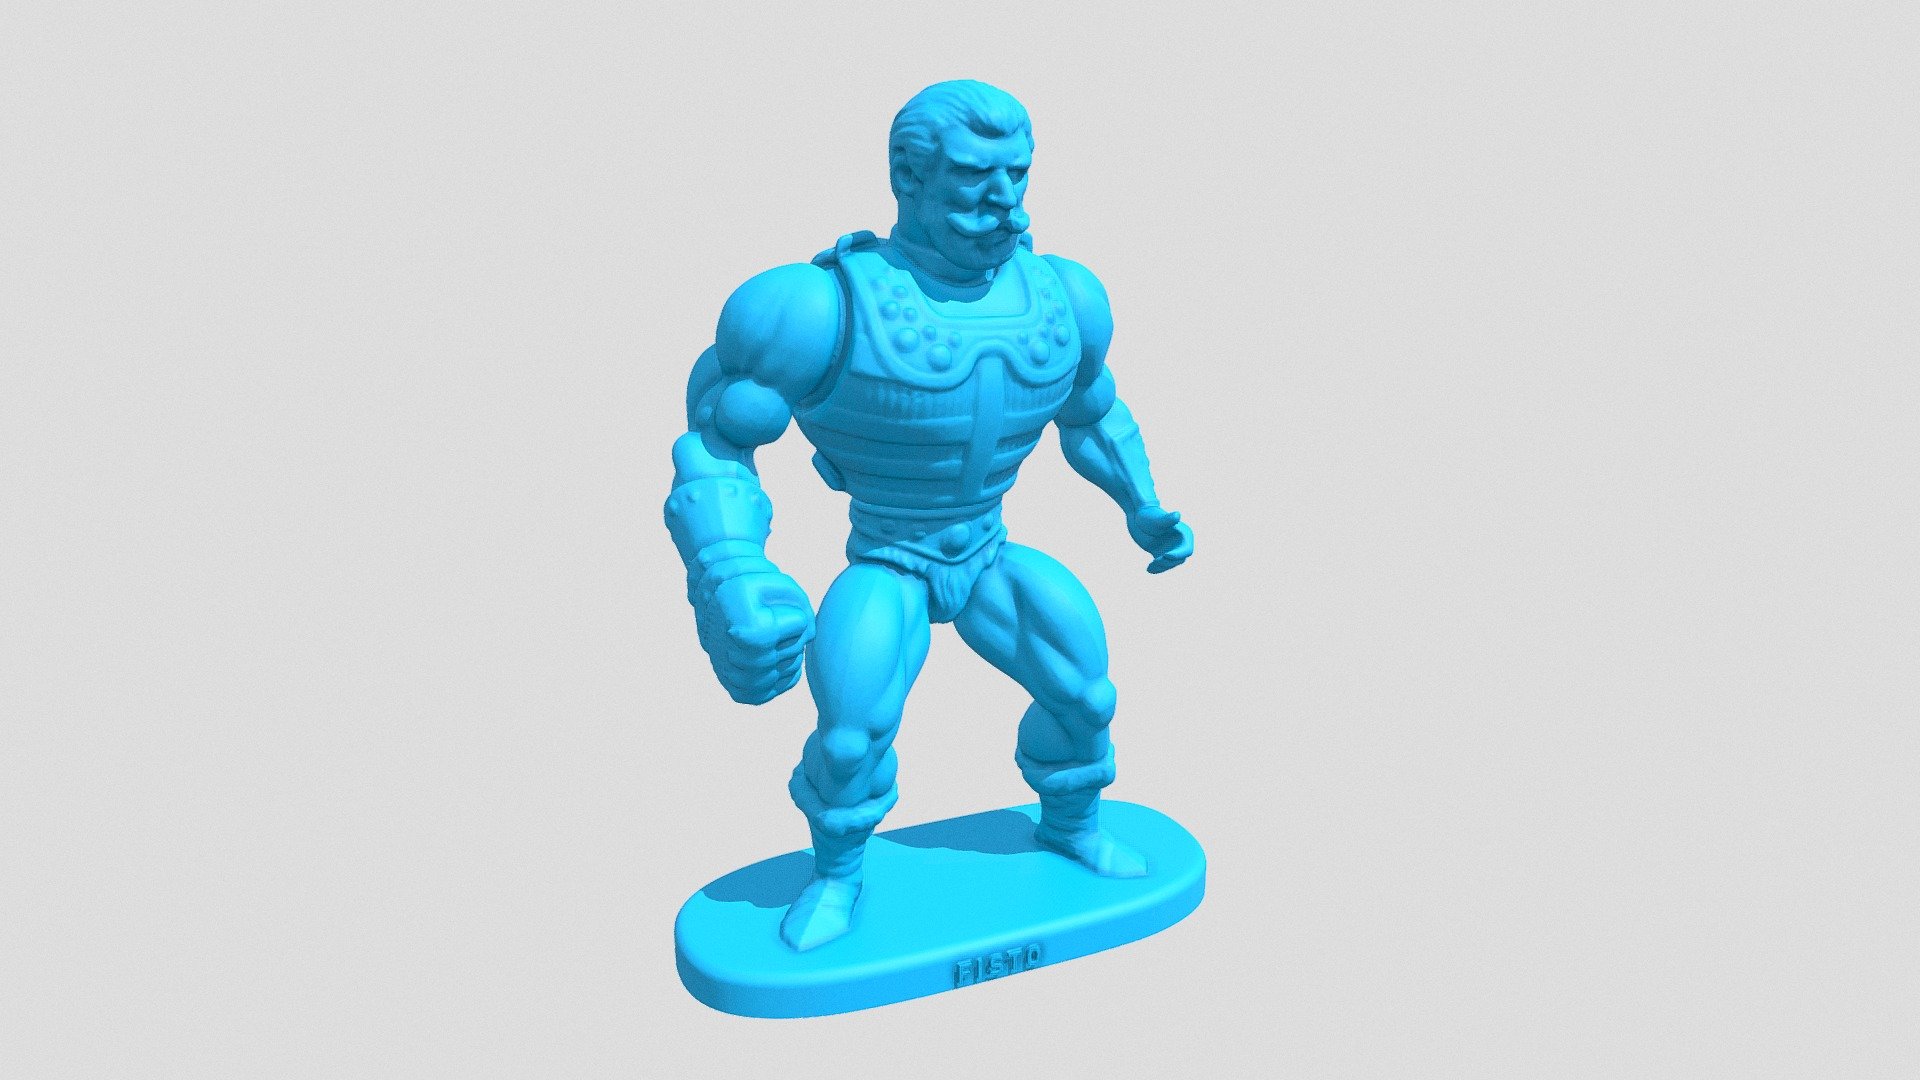 Personagem da série He-Man master Of The Universe (Boneco antigo dos anos 80 obtido por escaneamento 3D e adaptado para a escala da Gulliver Heróis Anos 80) - #036 Fisto - 3D model by 3DCraft (@insta3dcraft) 3d model